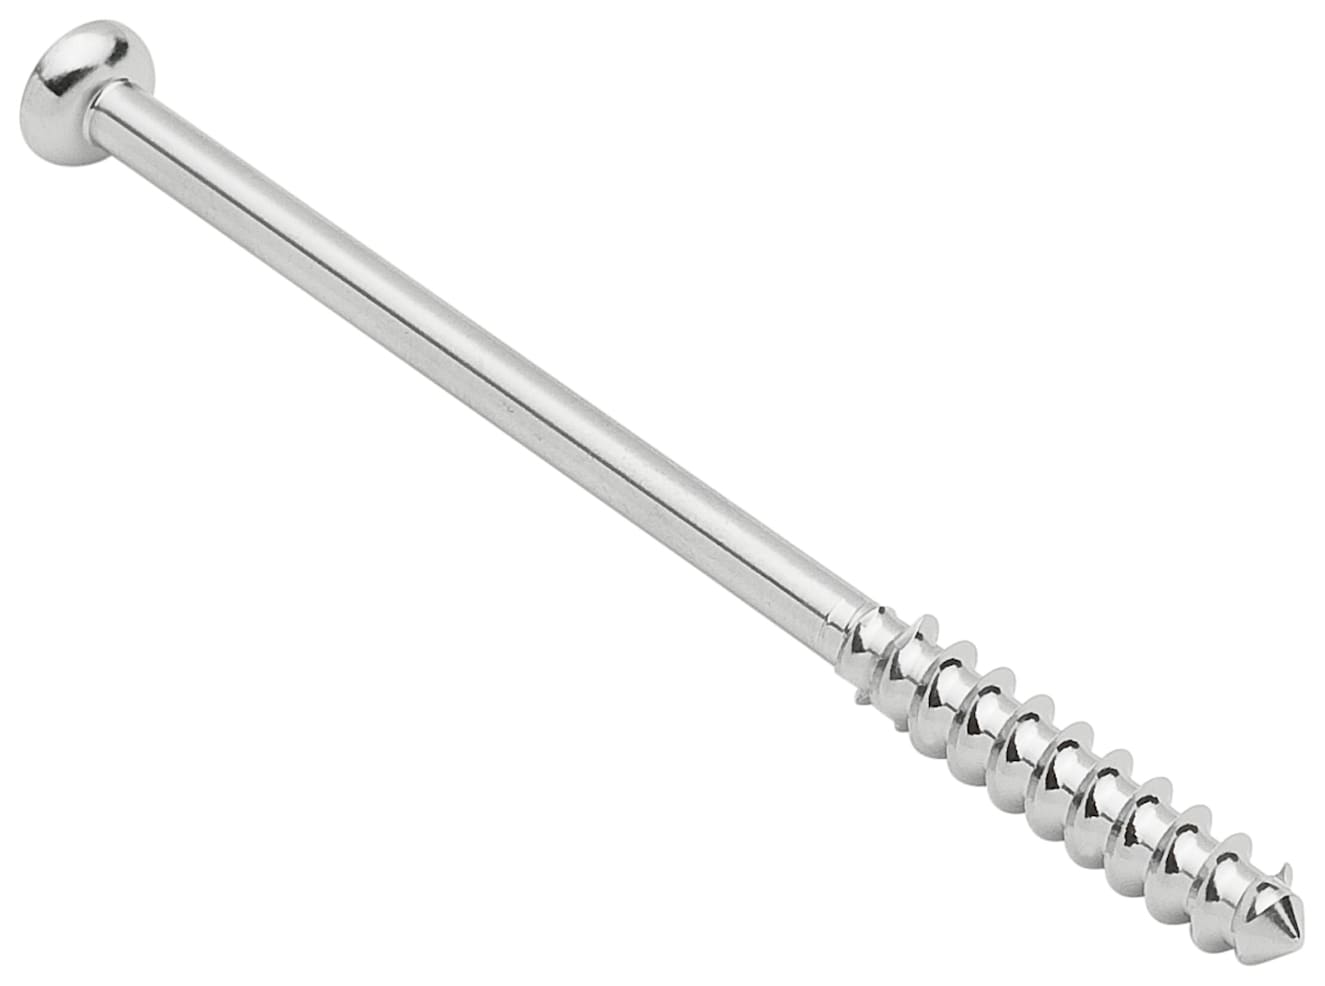 Low Profil Schraube, Stahl, kurzes Gewinde, 4.0 mm x 60 mm, unsteril, IM